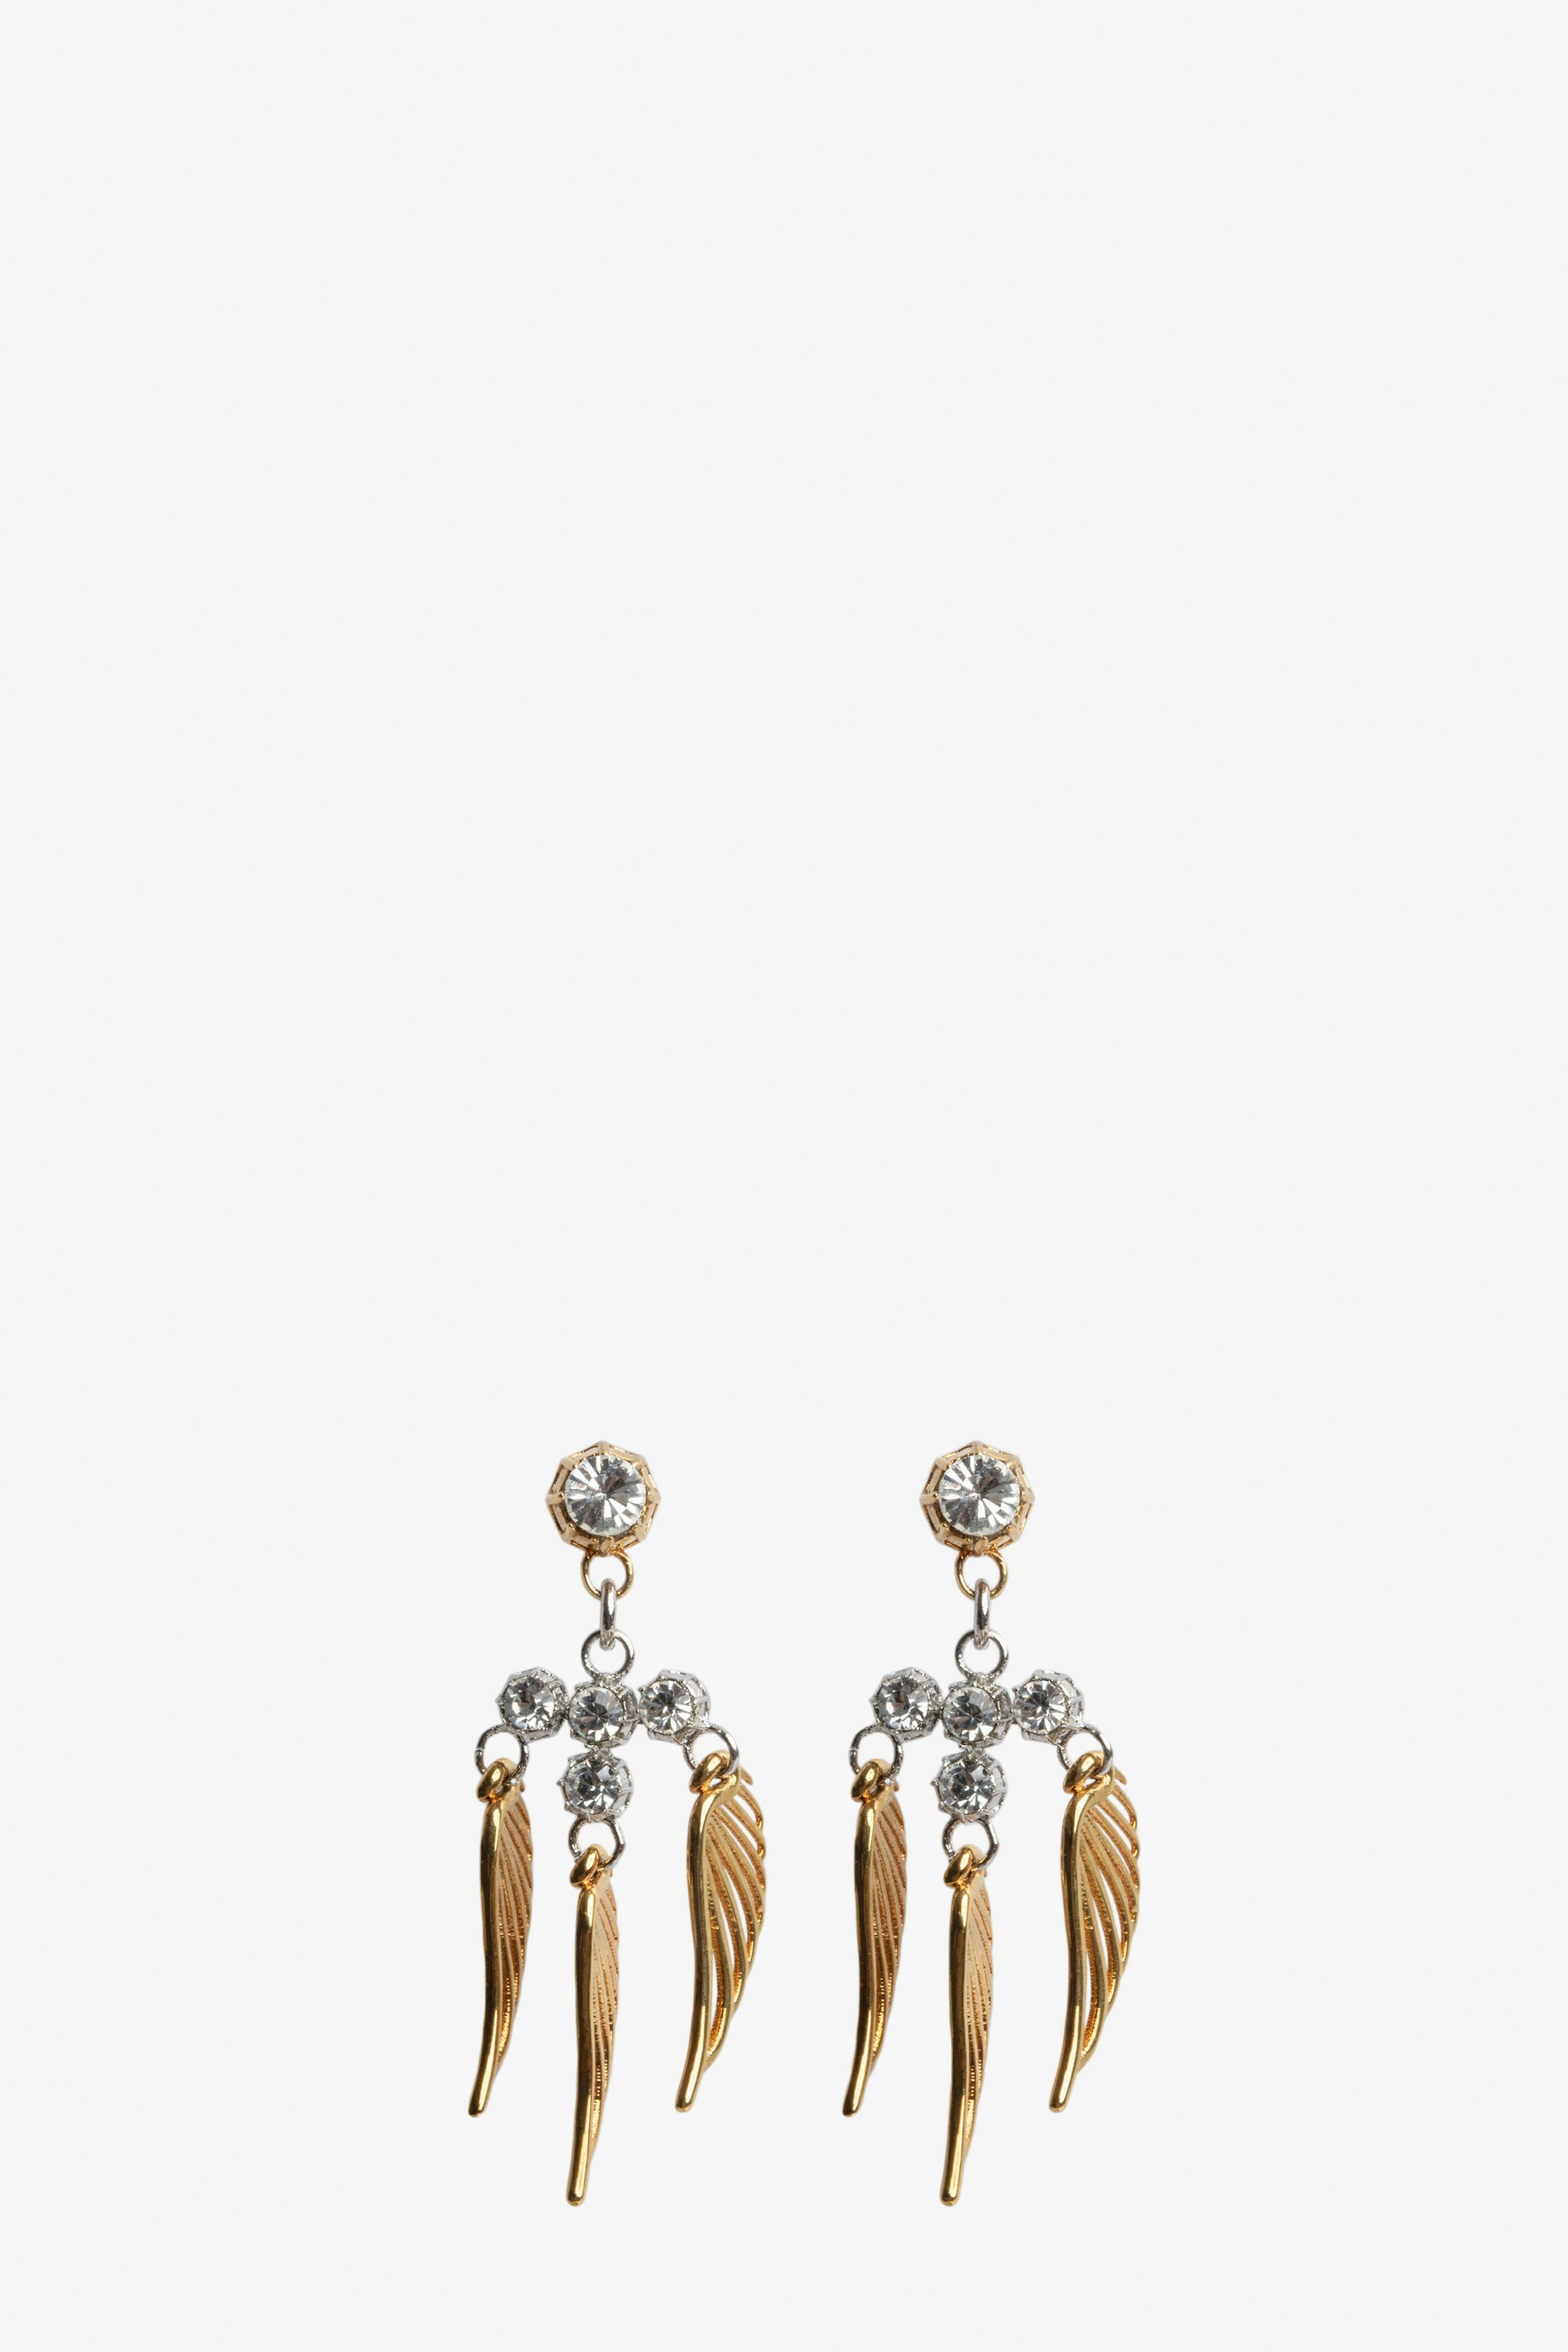 Rock Over Small Earrings Women's gold-tone brass wings earrings